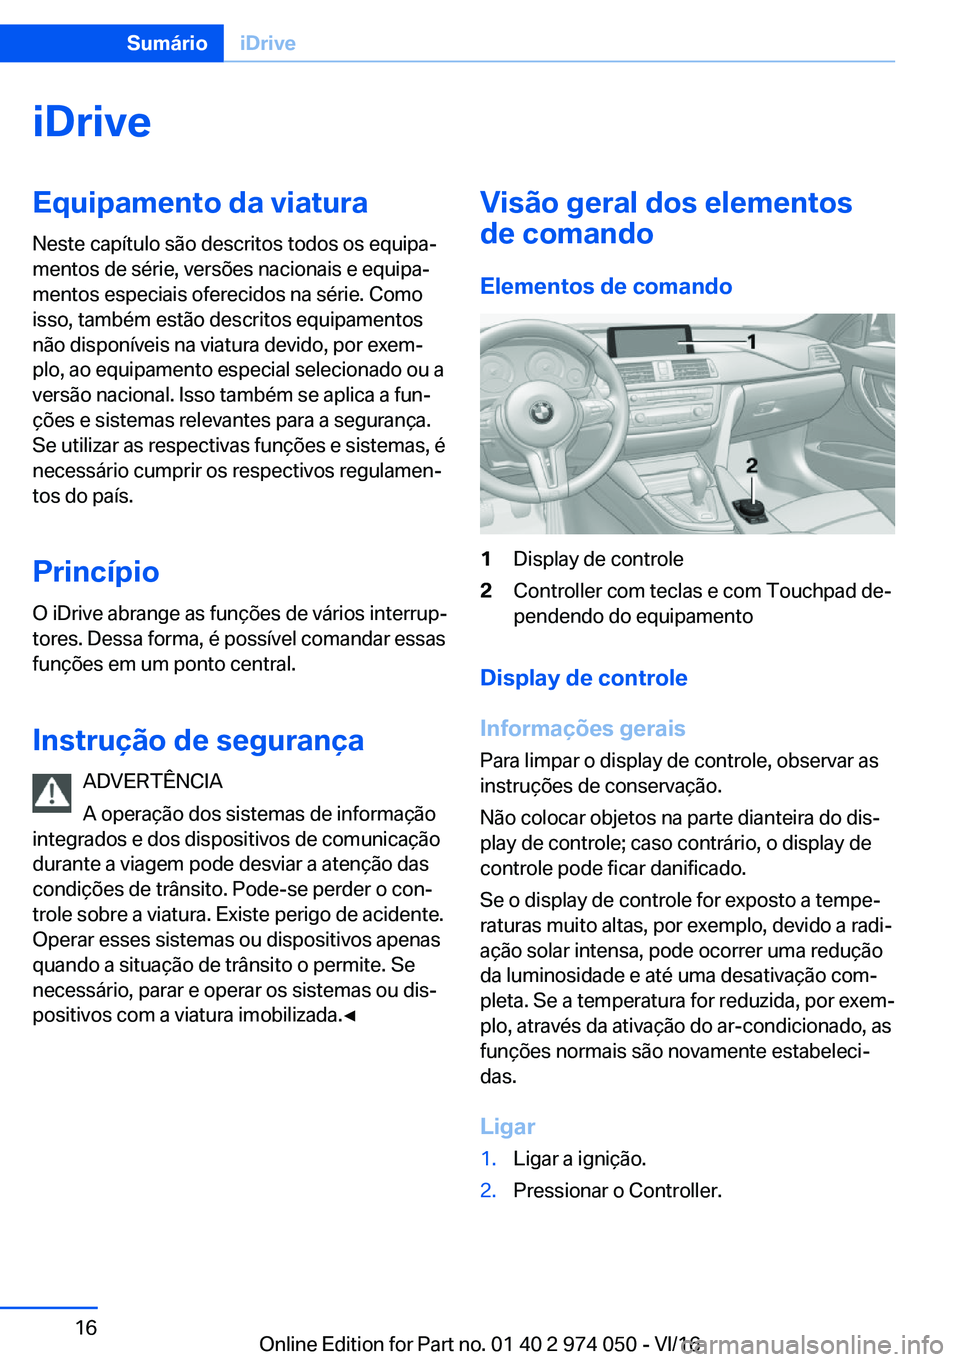 BMW M3 2017  Manual do condutor (in Portuguese) �i�D�r�i�v�e�E�q�u�i�p�a�m�e�n�t�o��d�a��v�i�a�t�u�r�a
�N�e�s�t�e� �c�a�p�